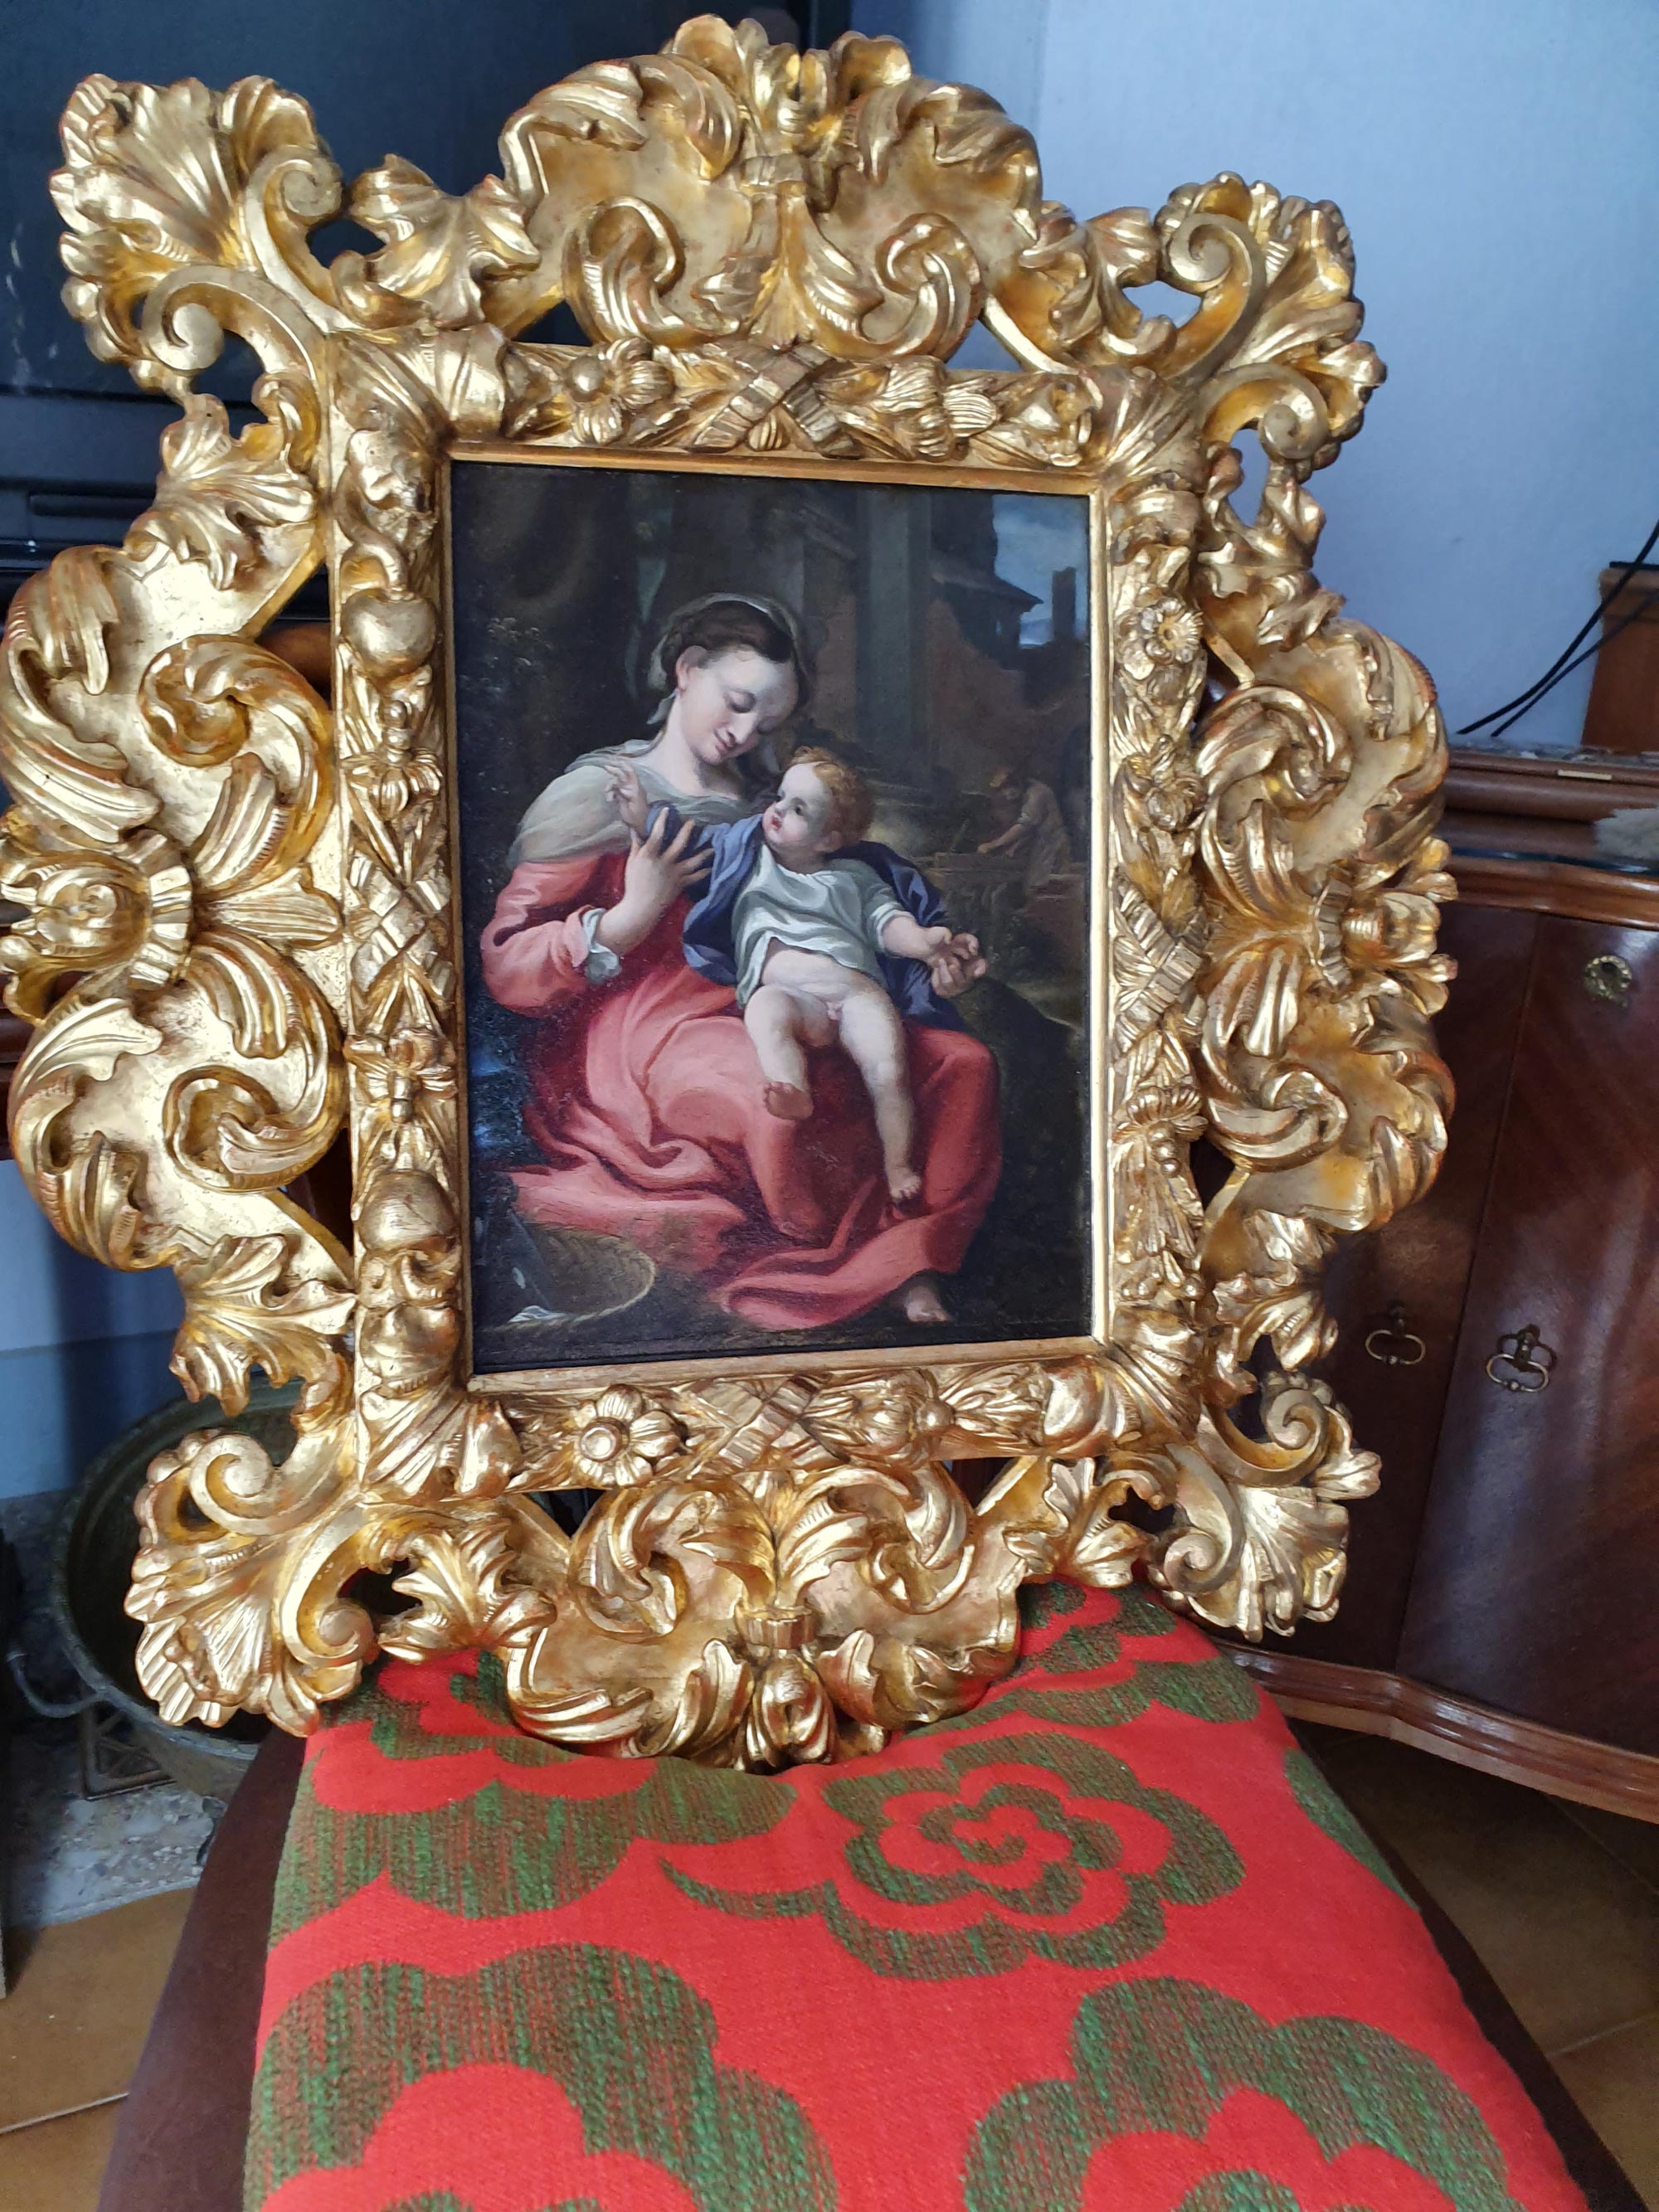 Girolamo Sellari, detto Girolamo da Carpi, Copia della Madonna della cesta (olio su rame, 34 x 27 cm; Correggio, collezione privata). Ricordata con entusiasmo dal Vasari. 